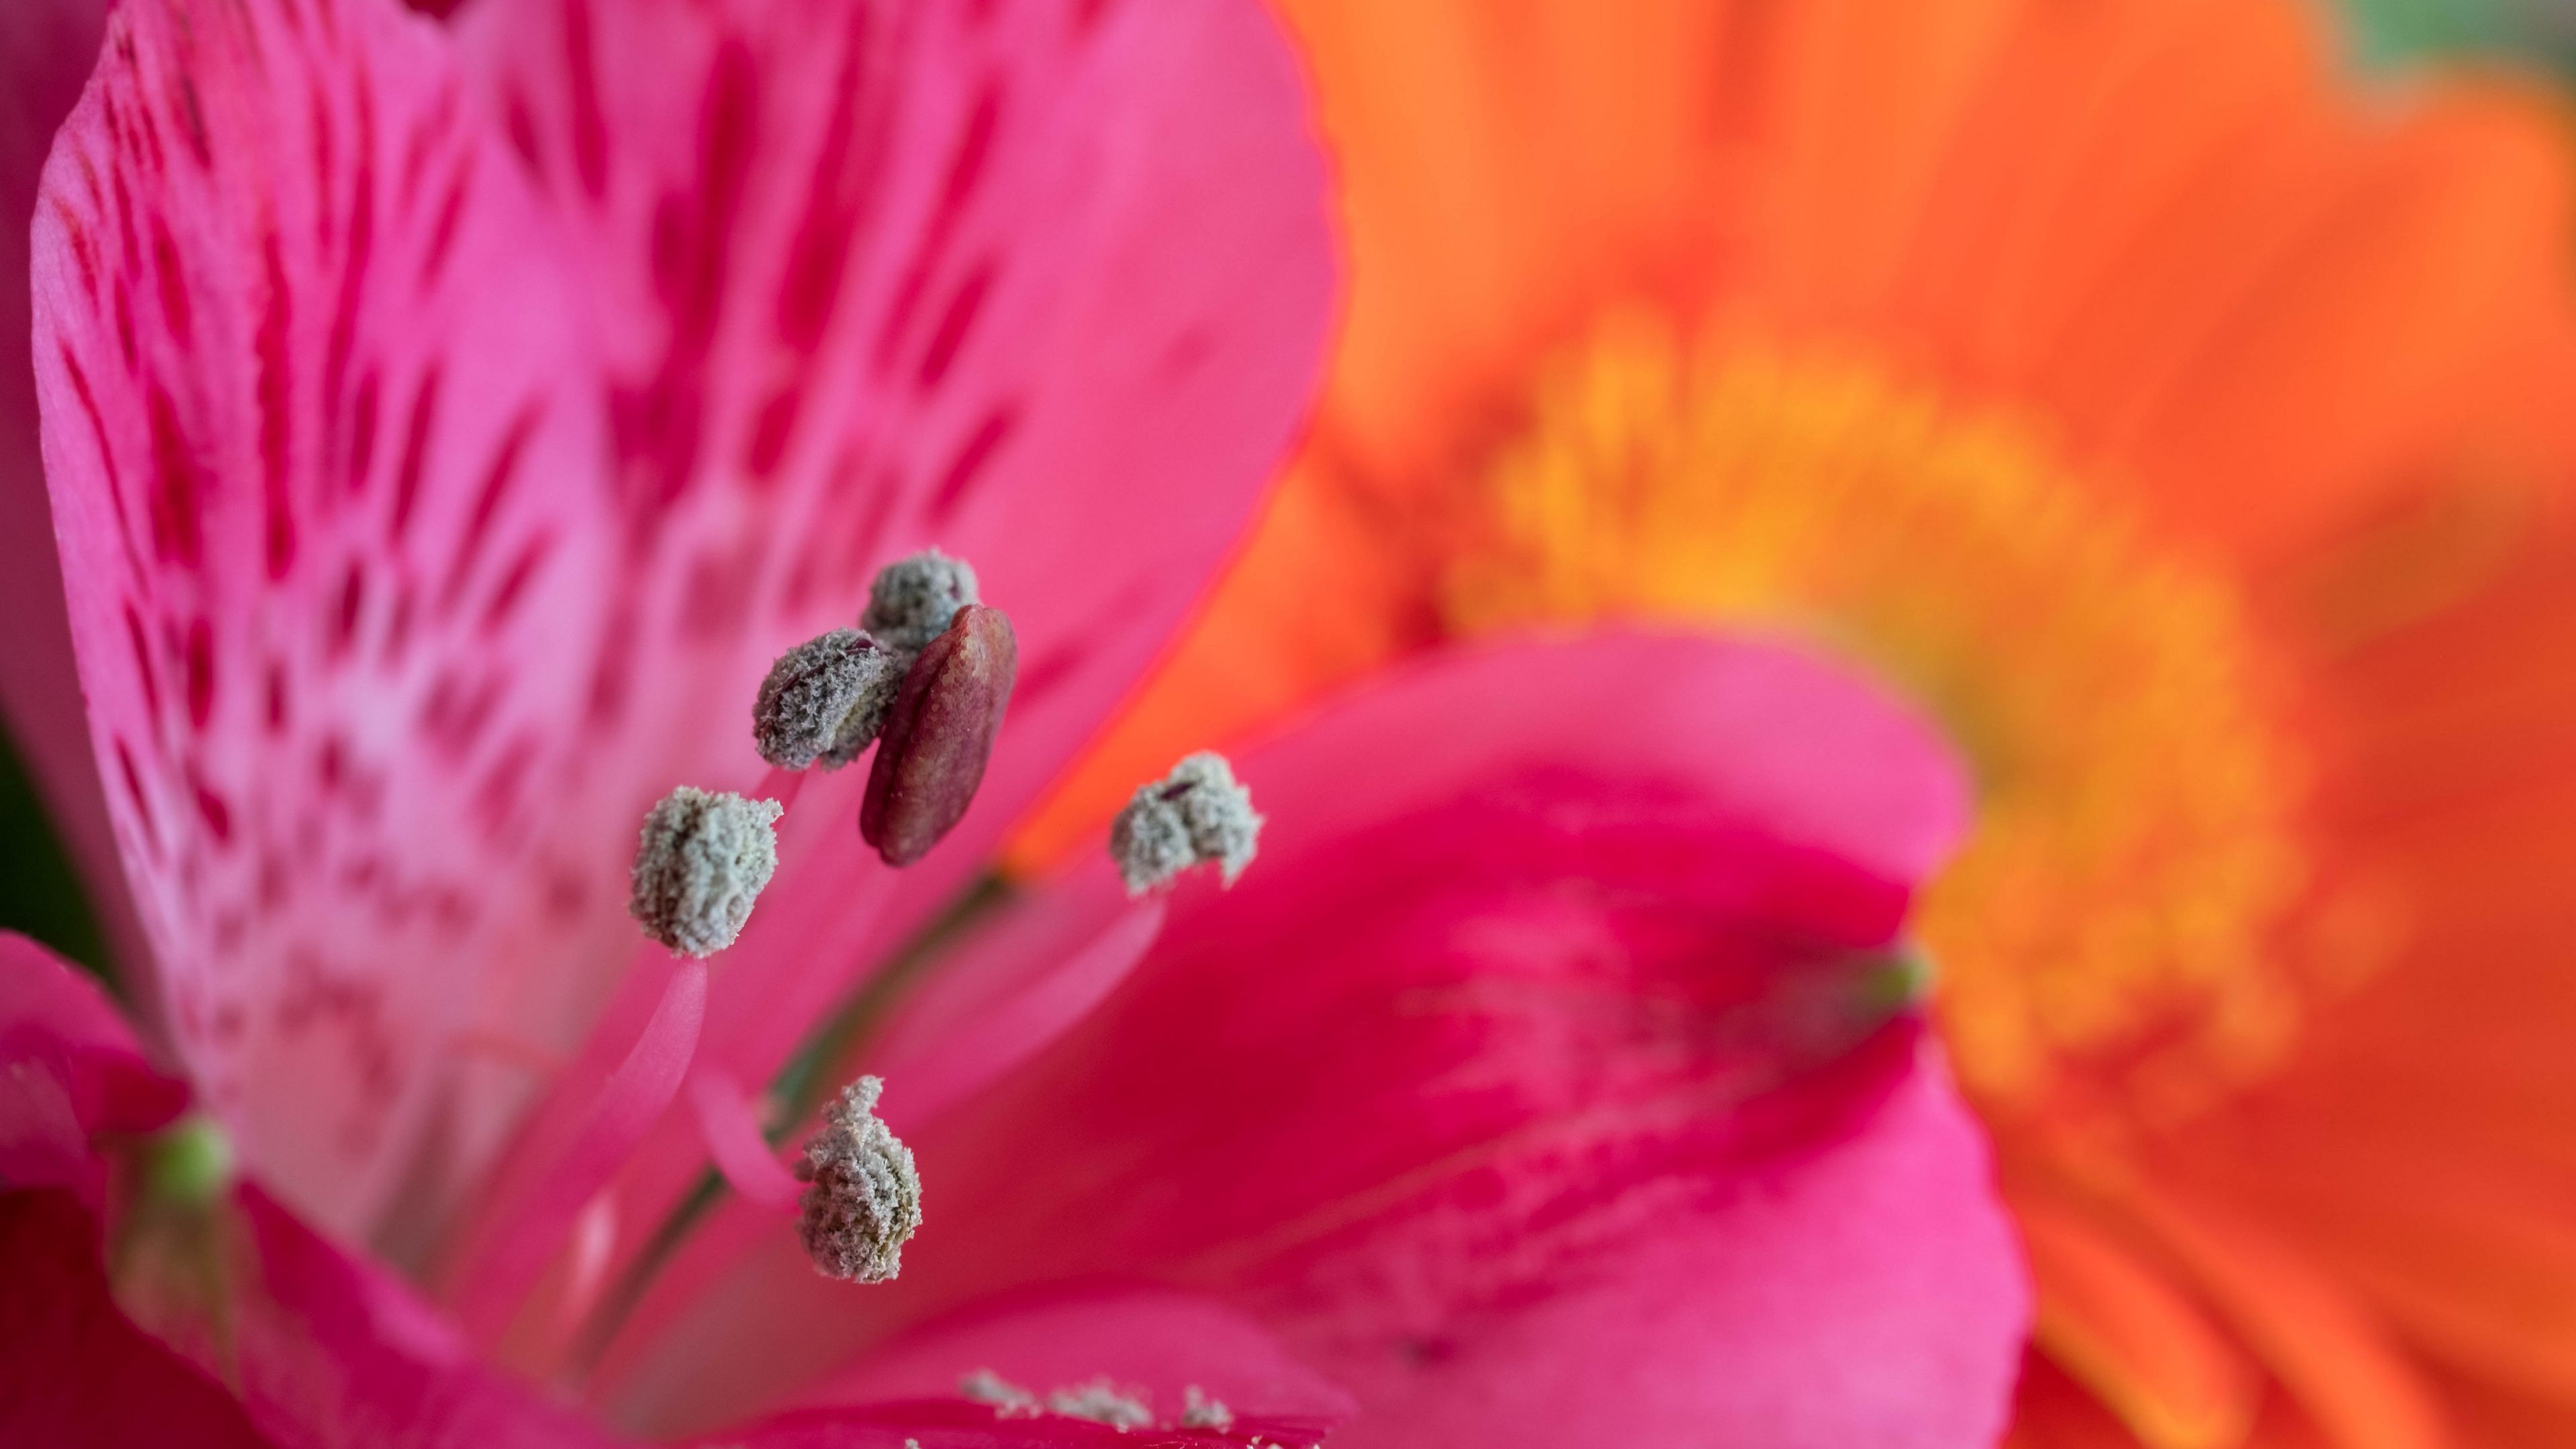 Fondos de pantalla Pollen on PInk flower